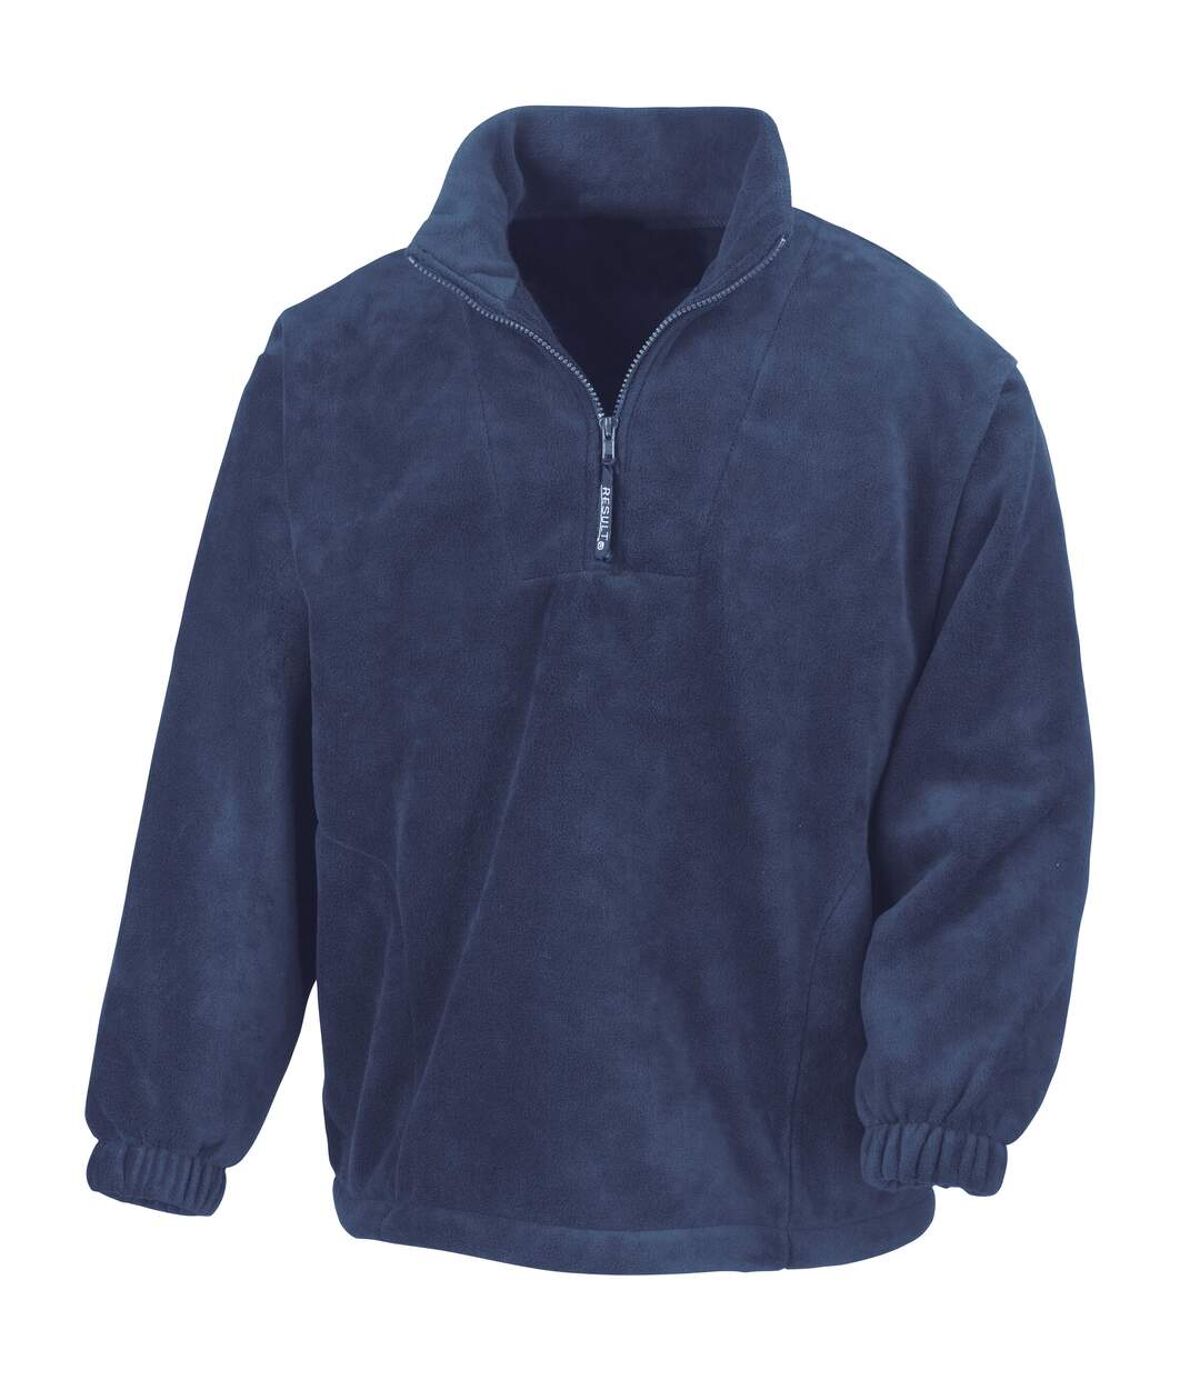 Result Unlined Active 1/4 Zip Anti-Pilling Fleece Top (Navy Blue) - UTBC920